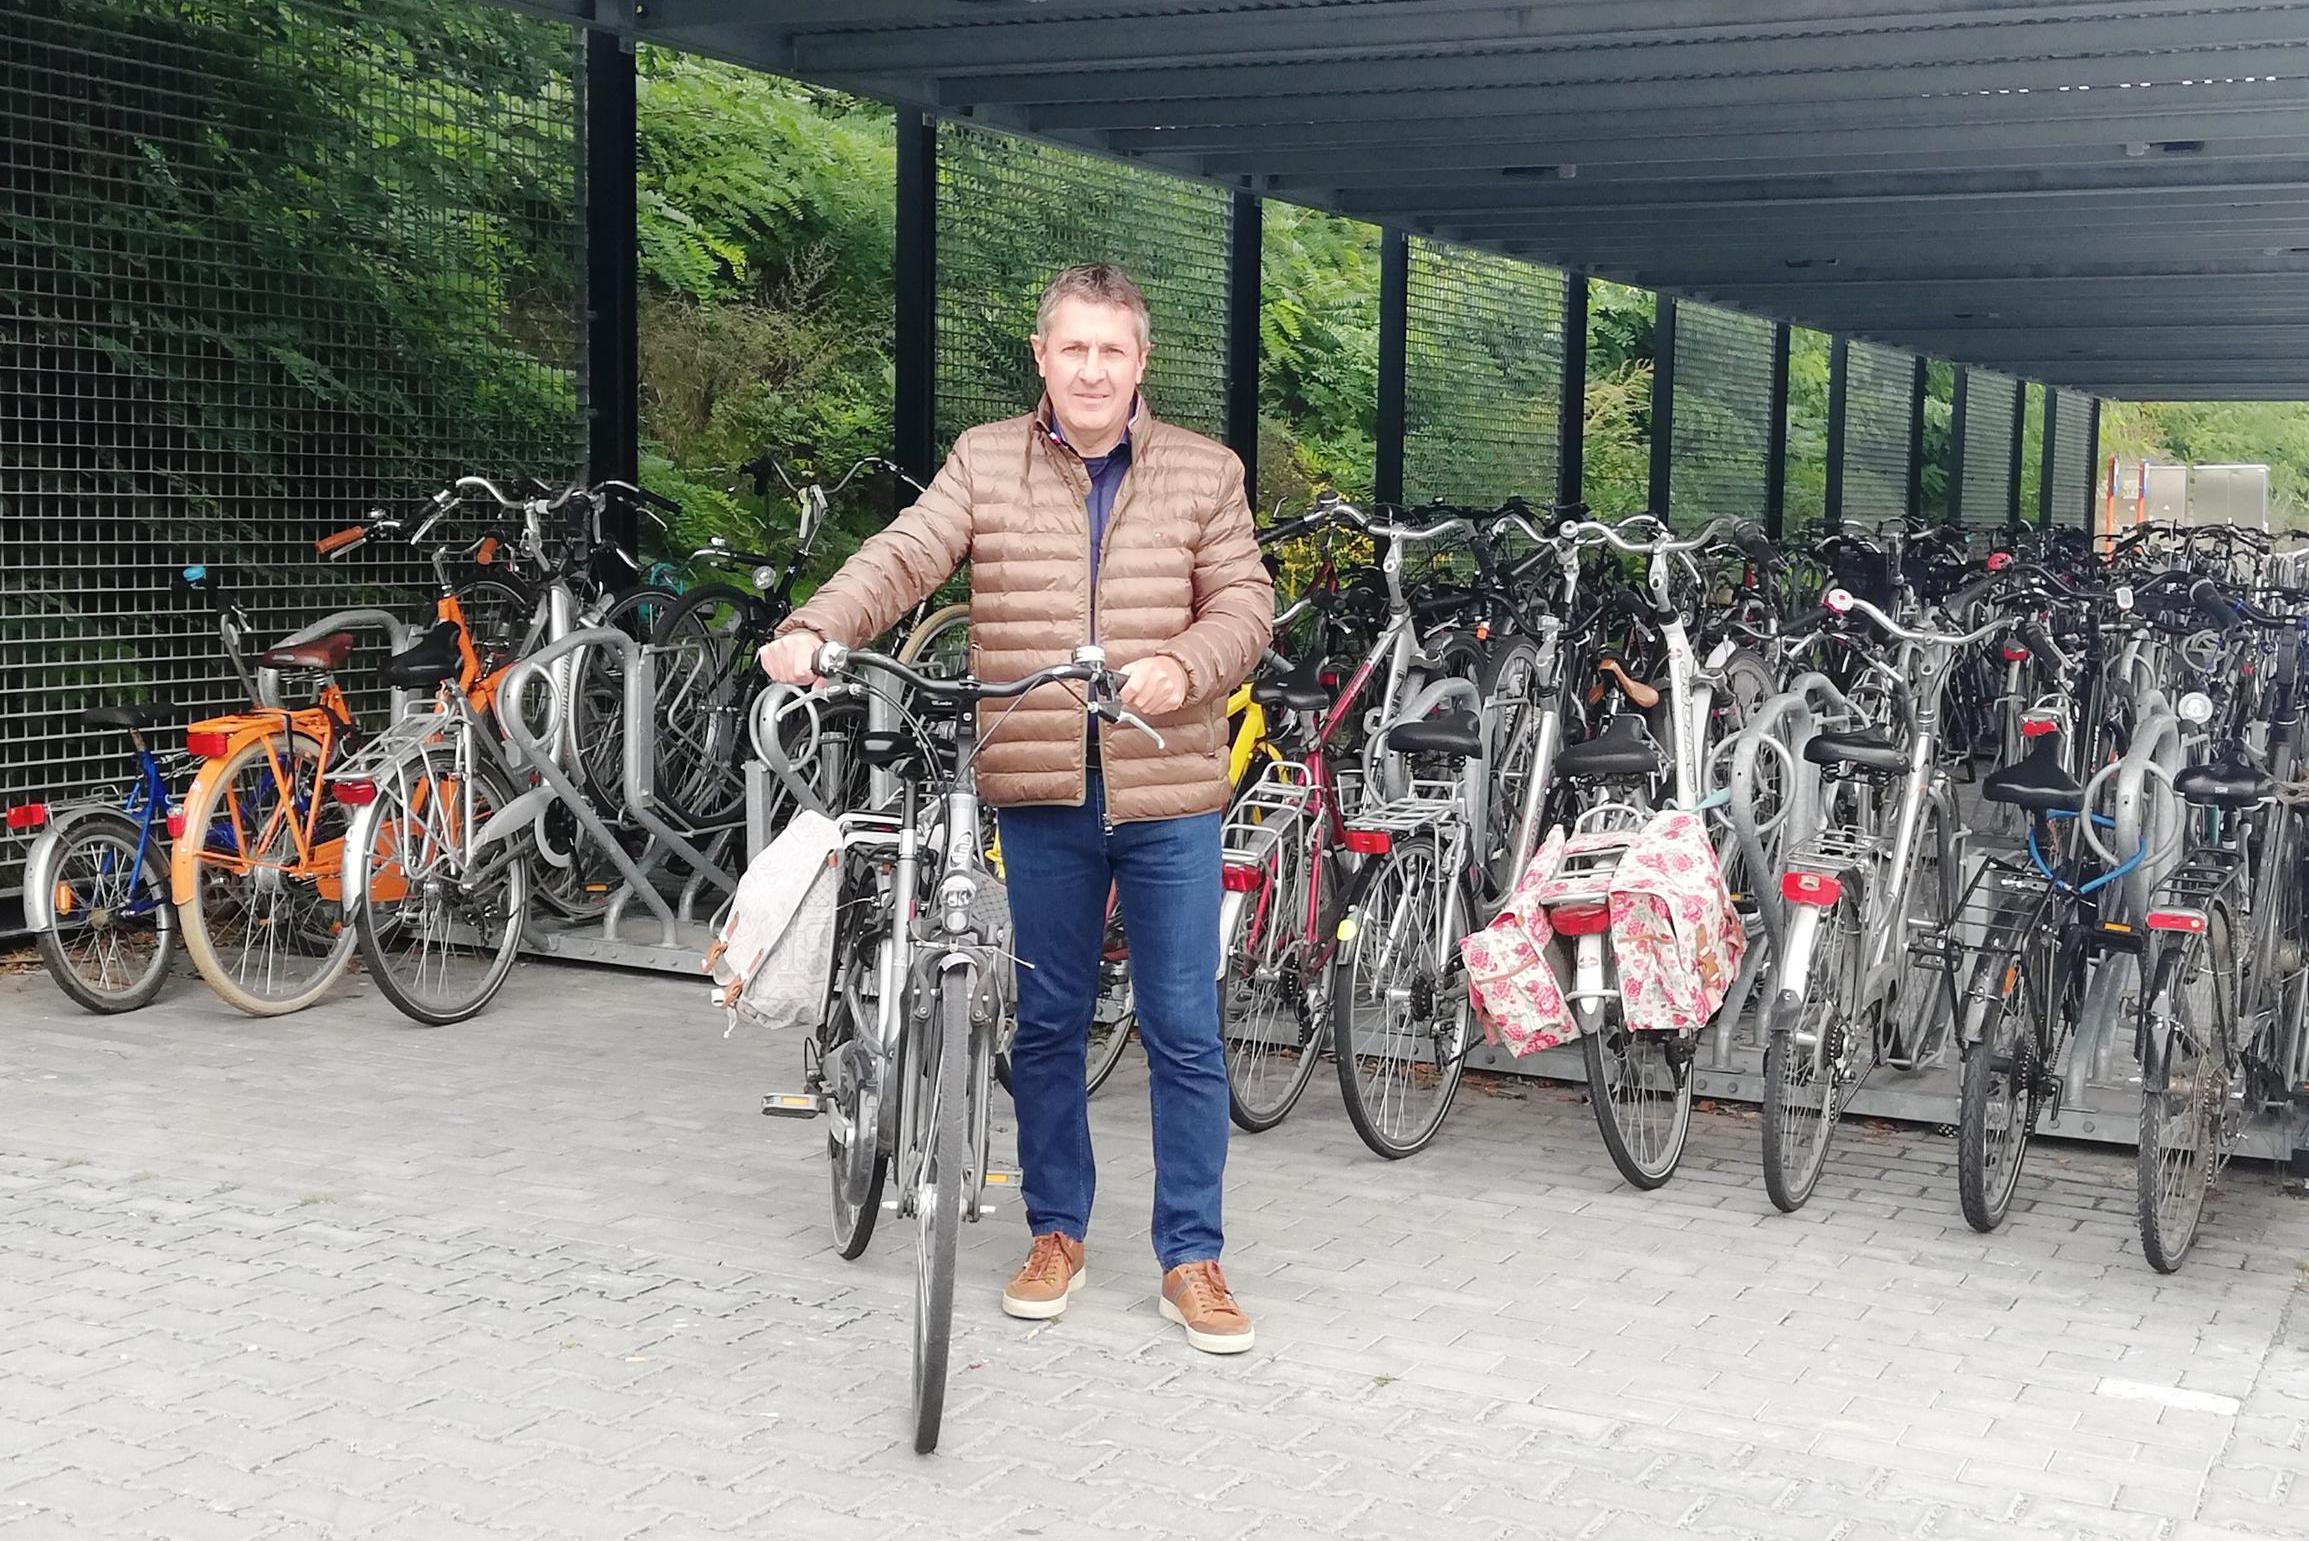 “Meer fietsen labelen, camerabewaking én aangifte doen”: proKA heeft ideeën om  fietsdiefstallen aan stationsomgeving te beperken